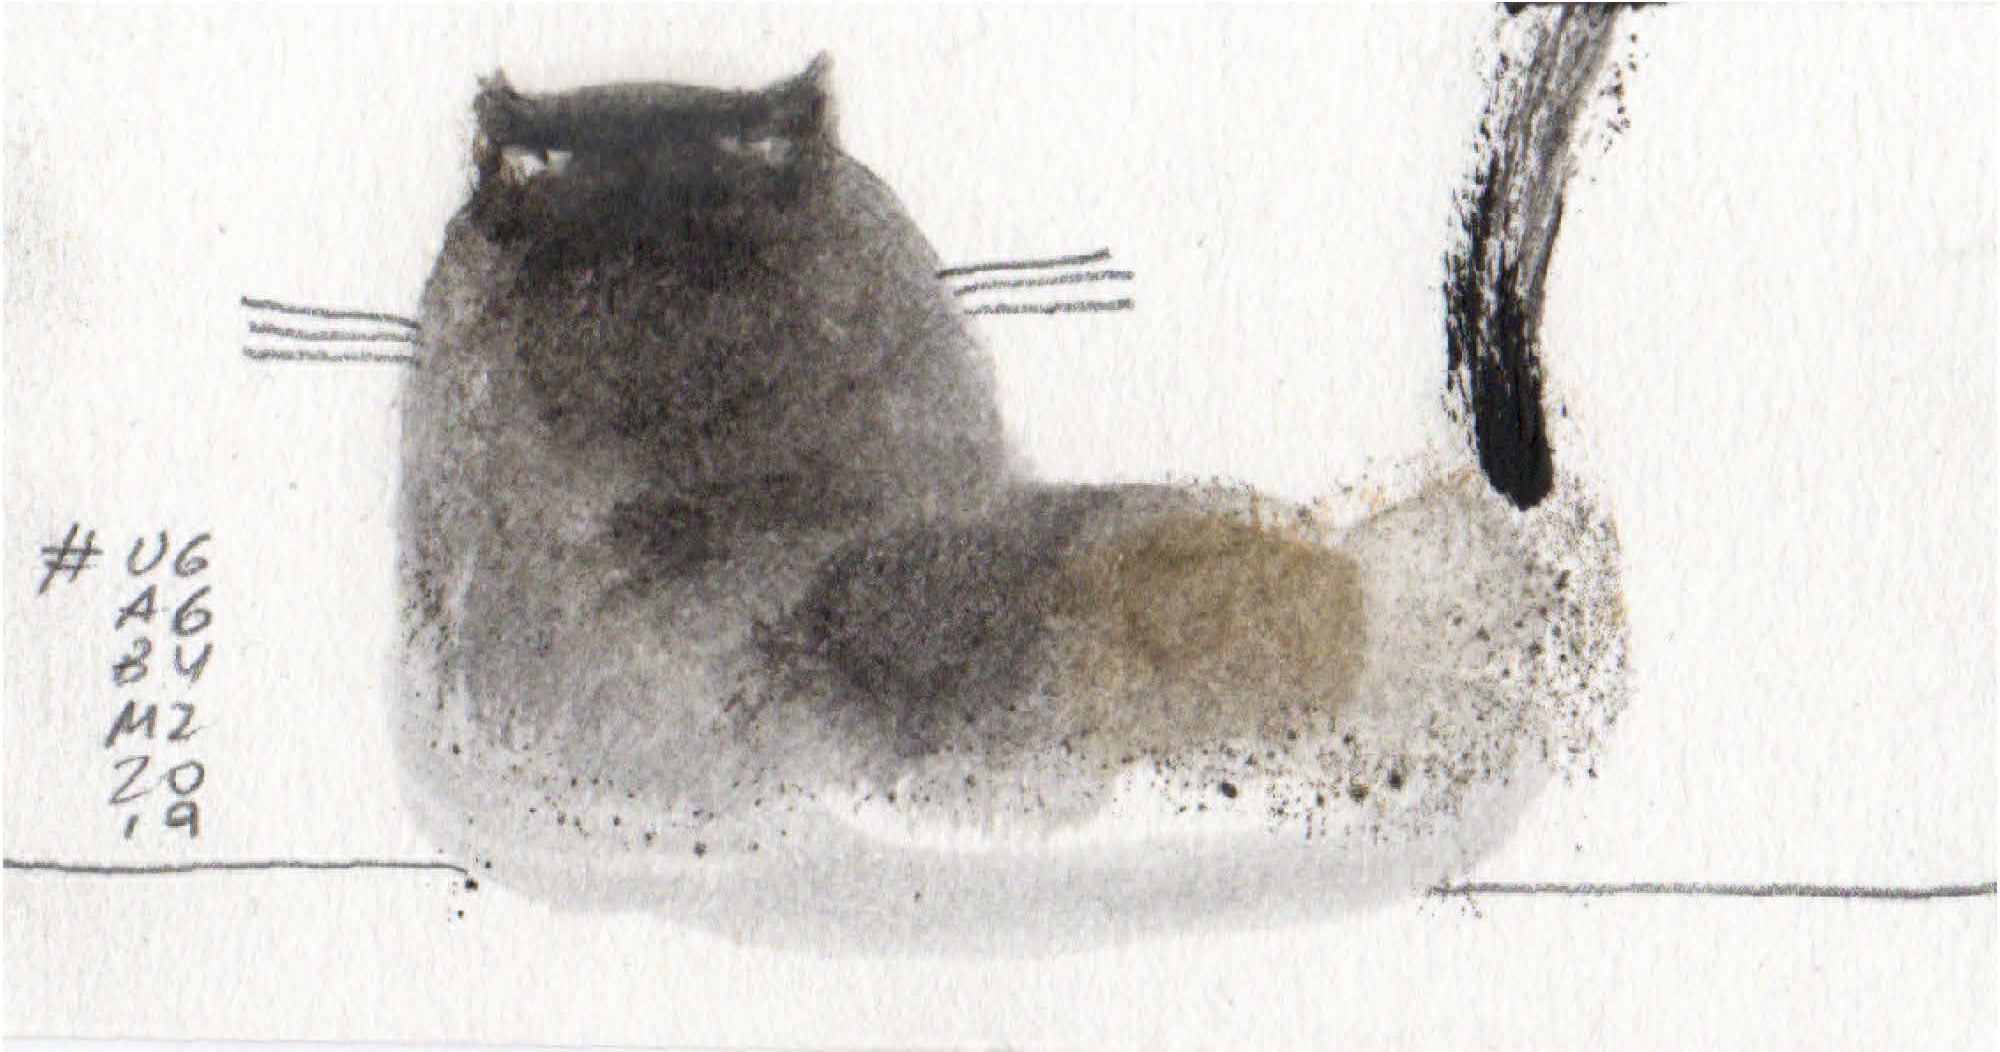 dipinto di un gatto sdraiato visto da dietro